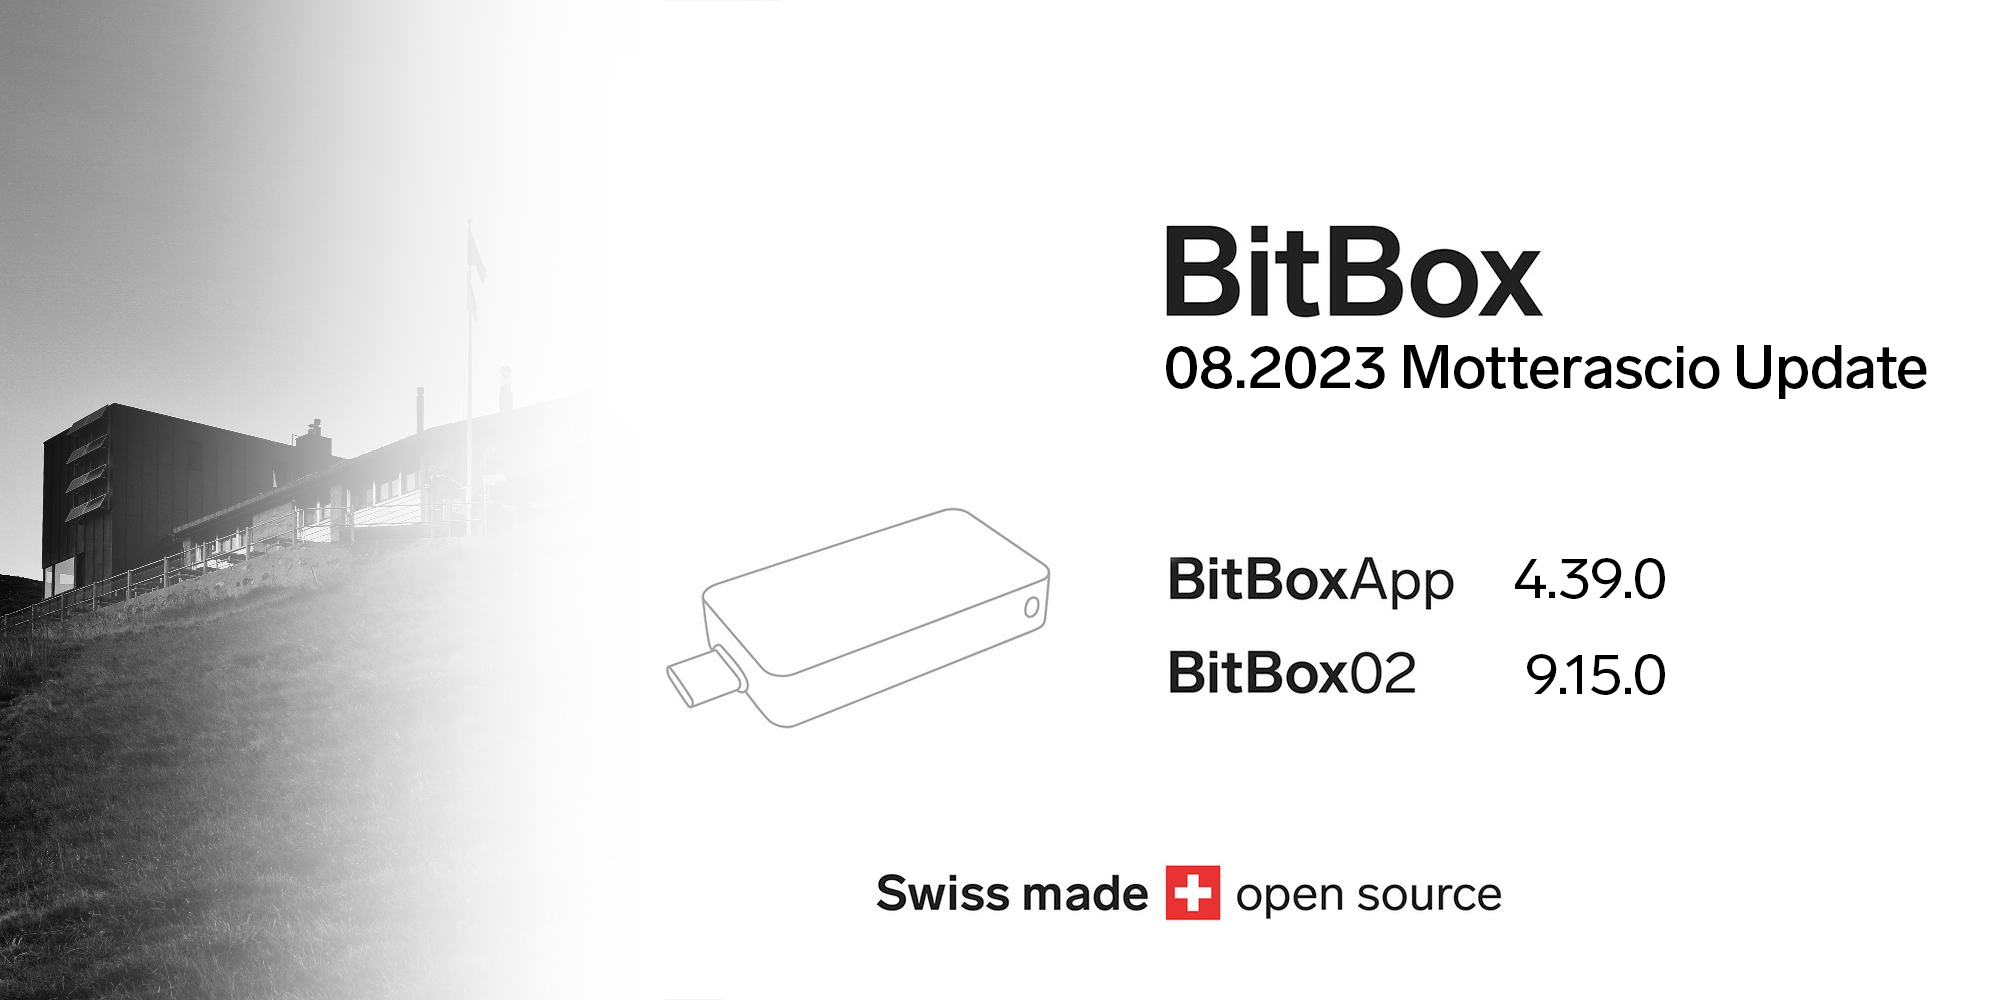 BitBox 08.2023 Motterascio update